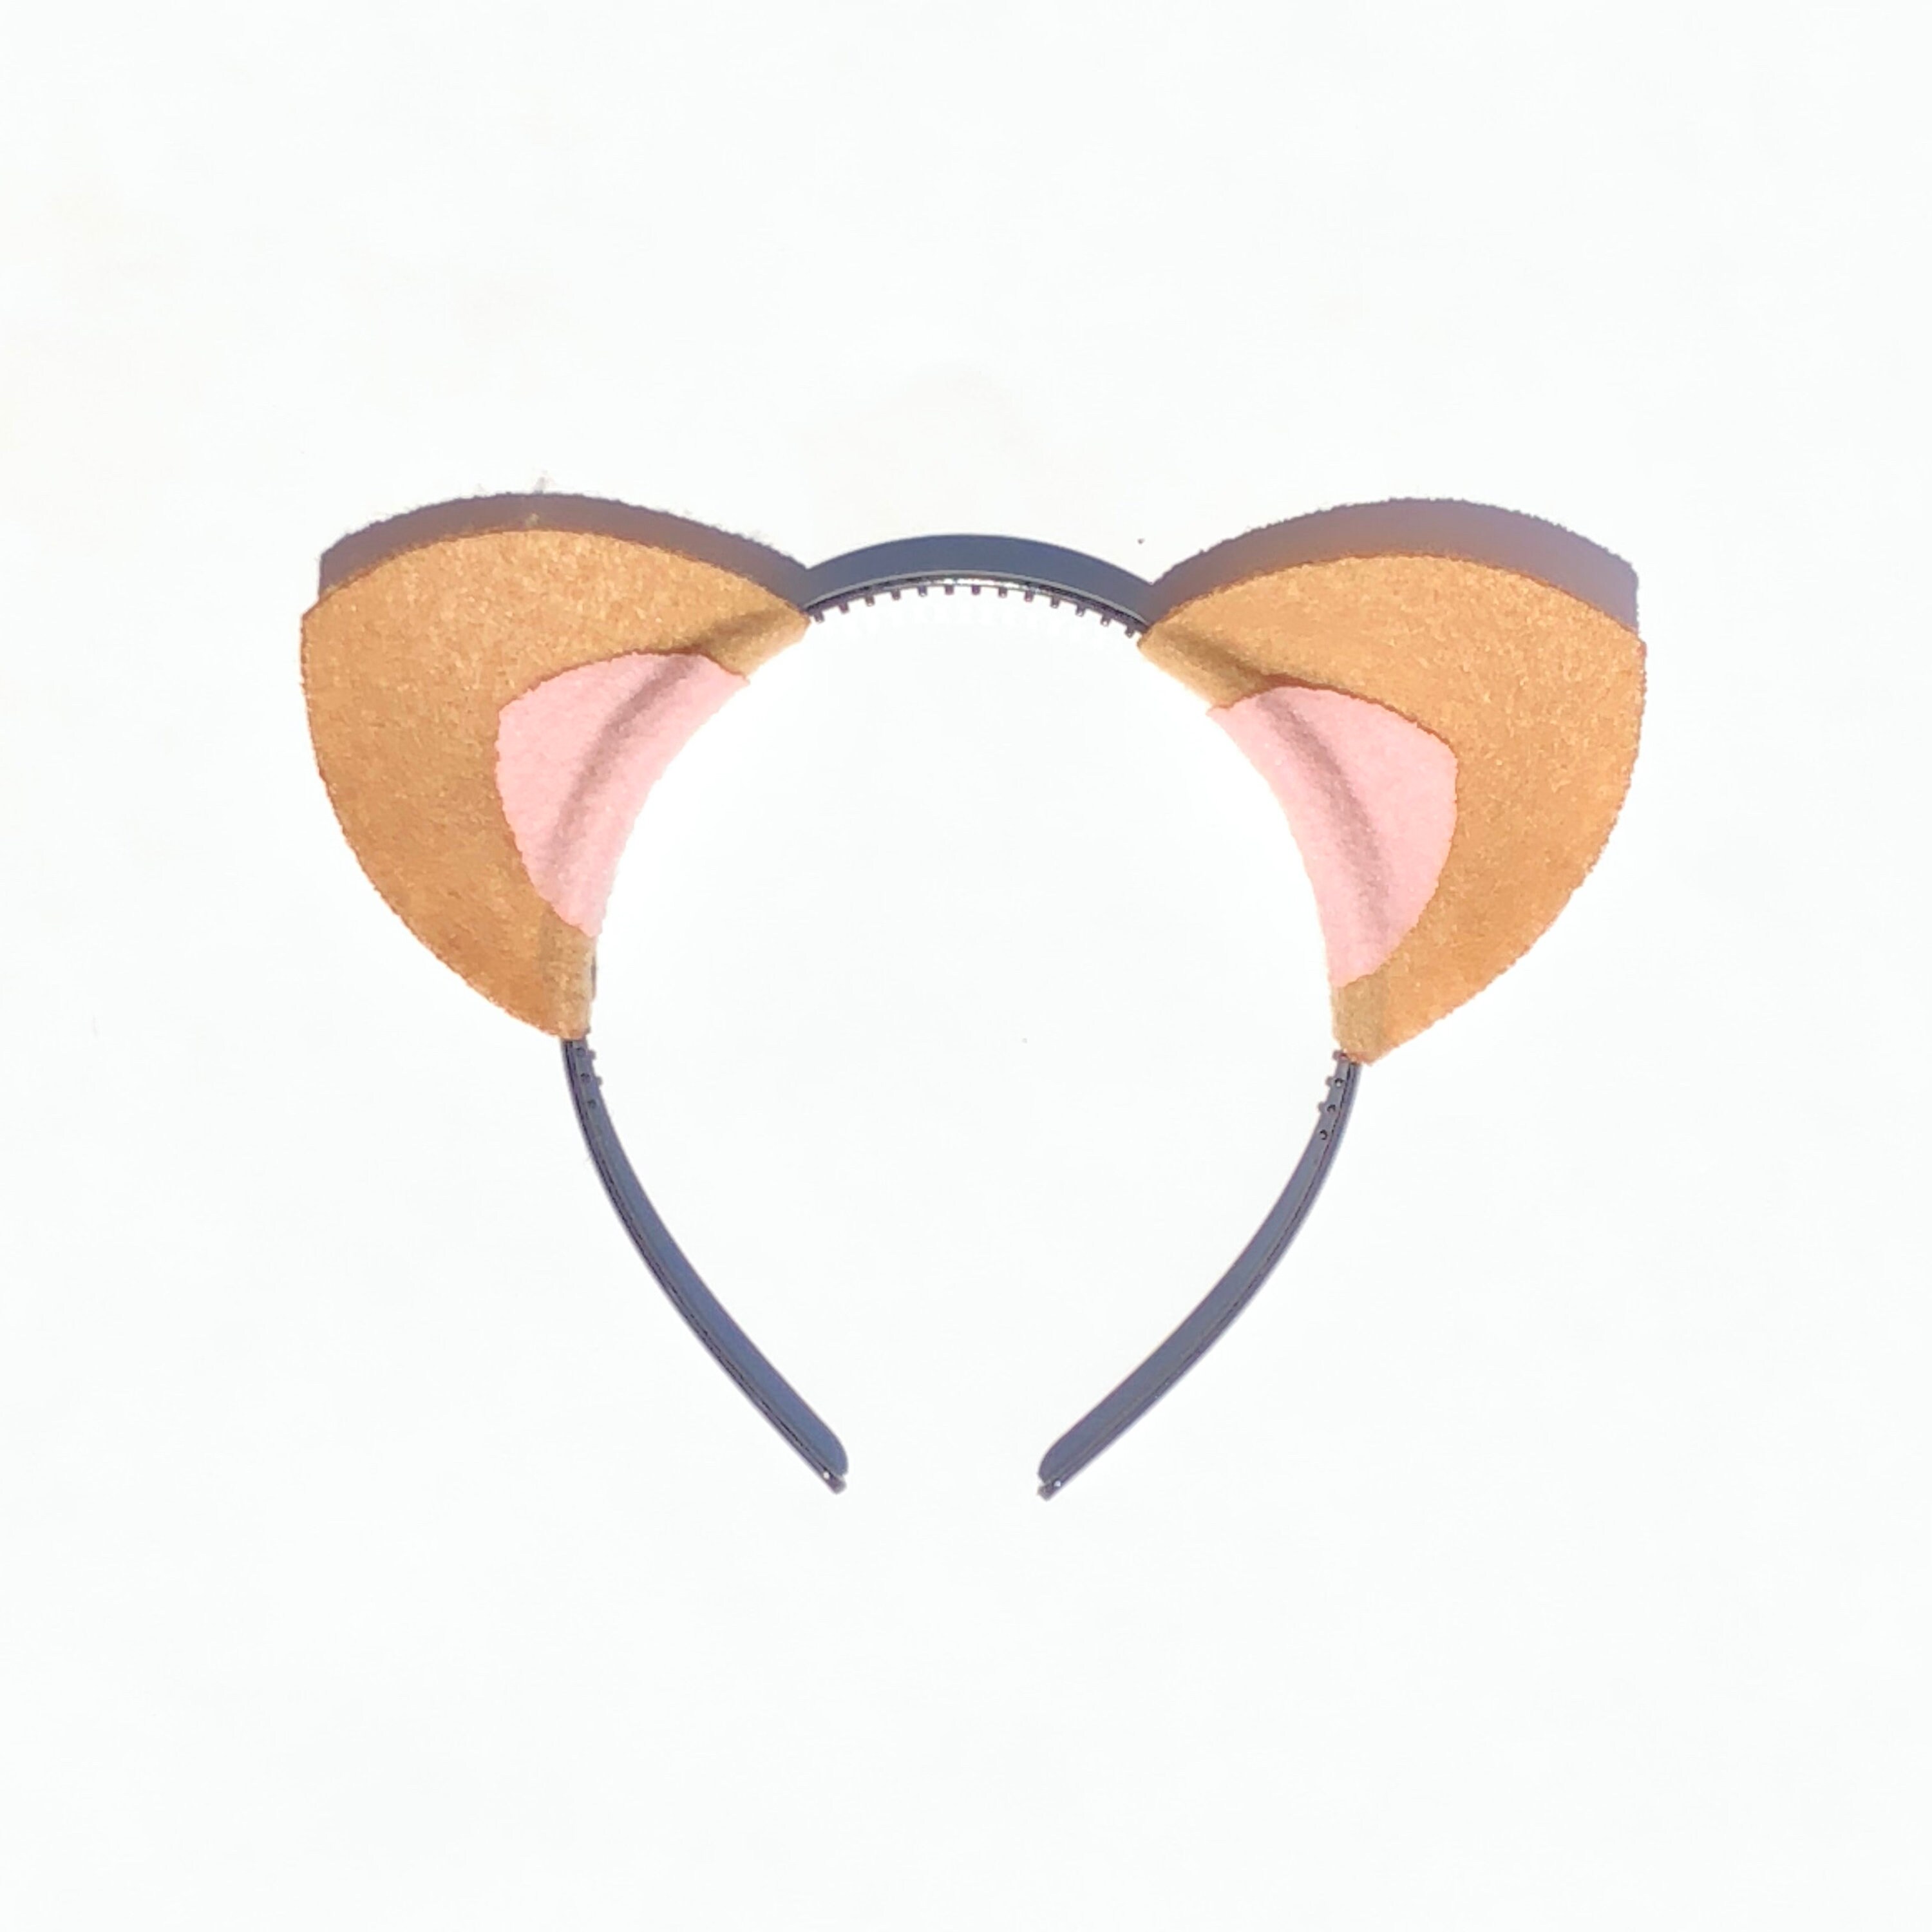 Kitty Cat Ears Headband For Birthday Party Favors Baby Etsy